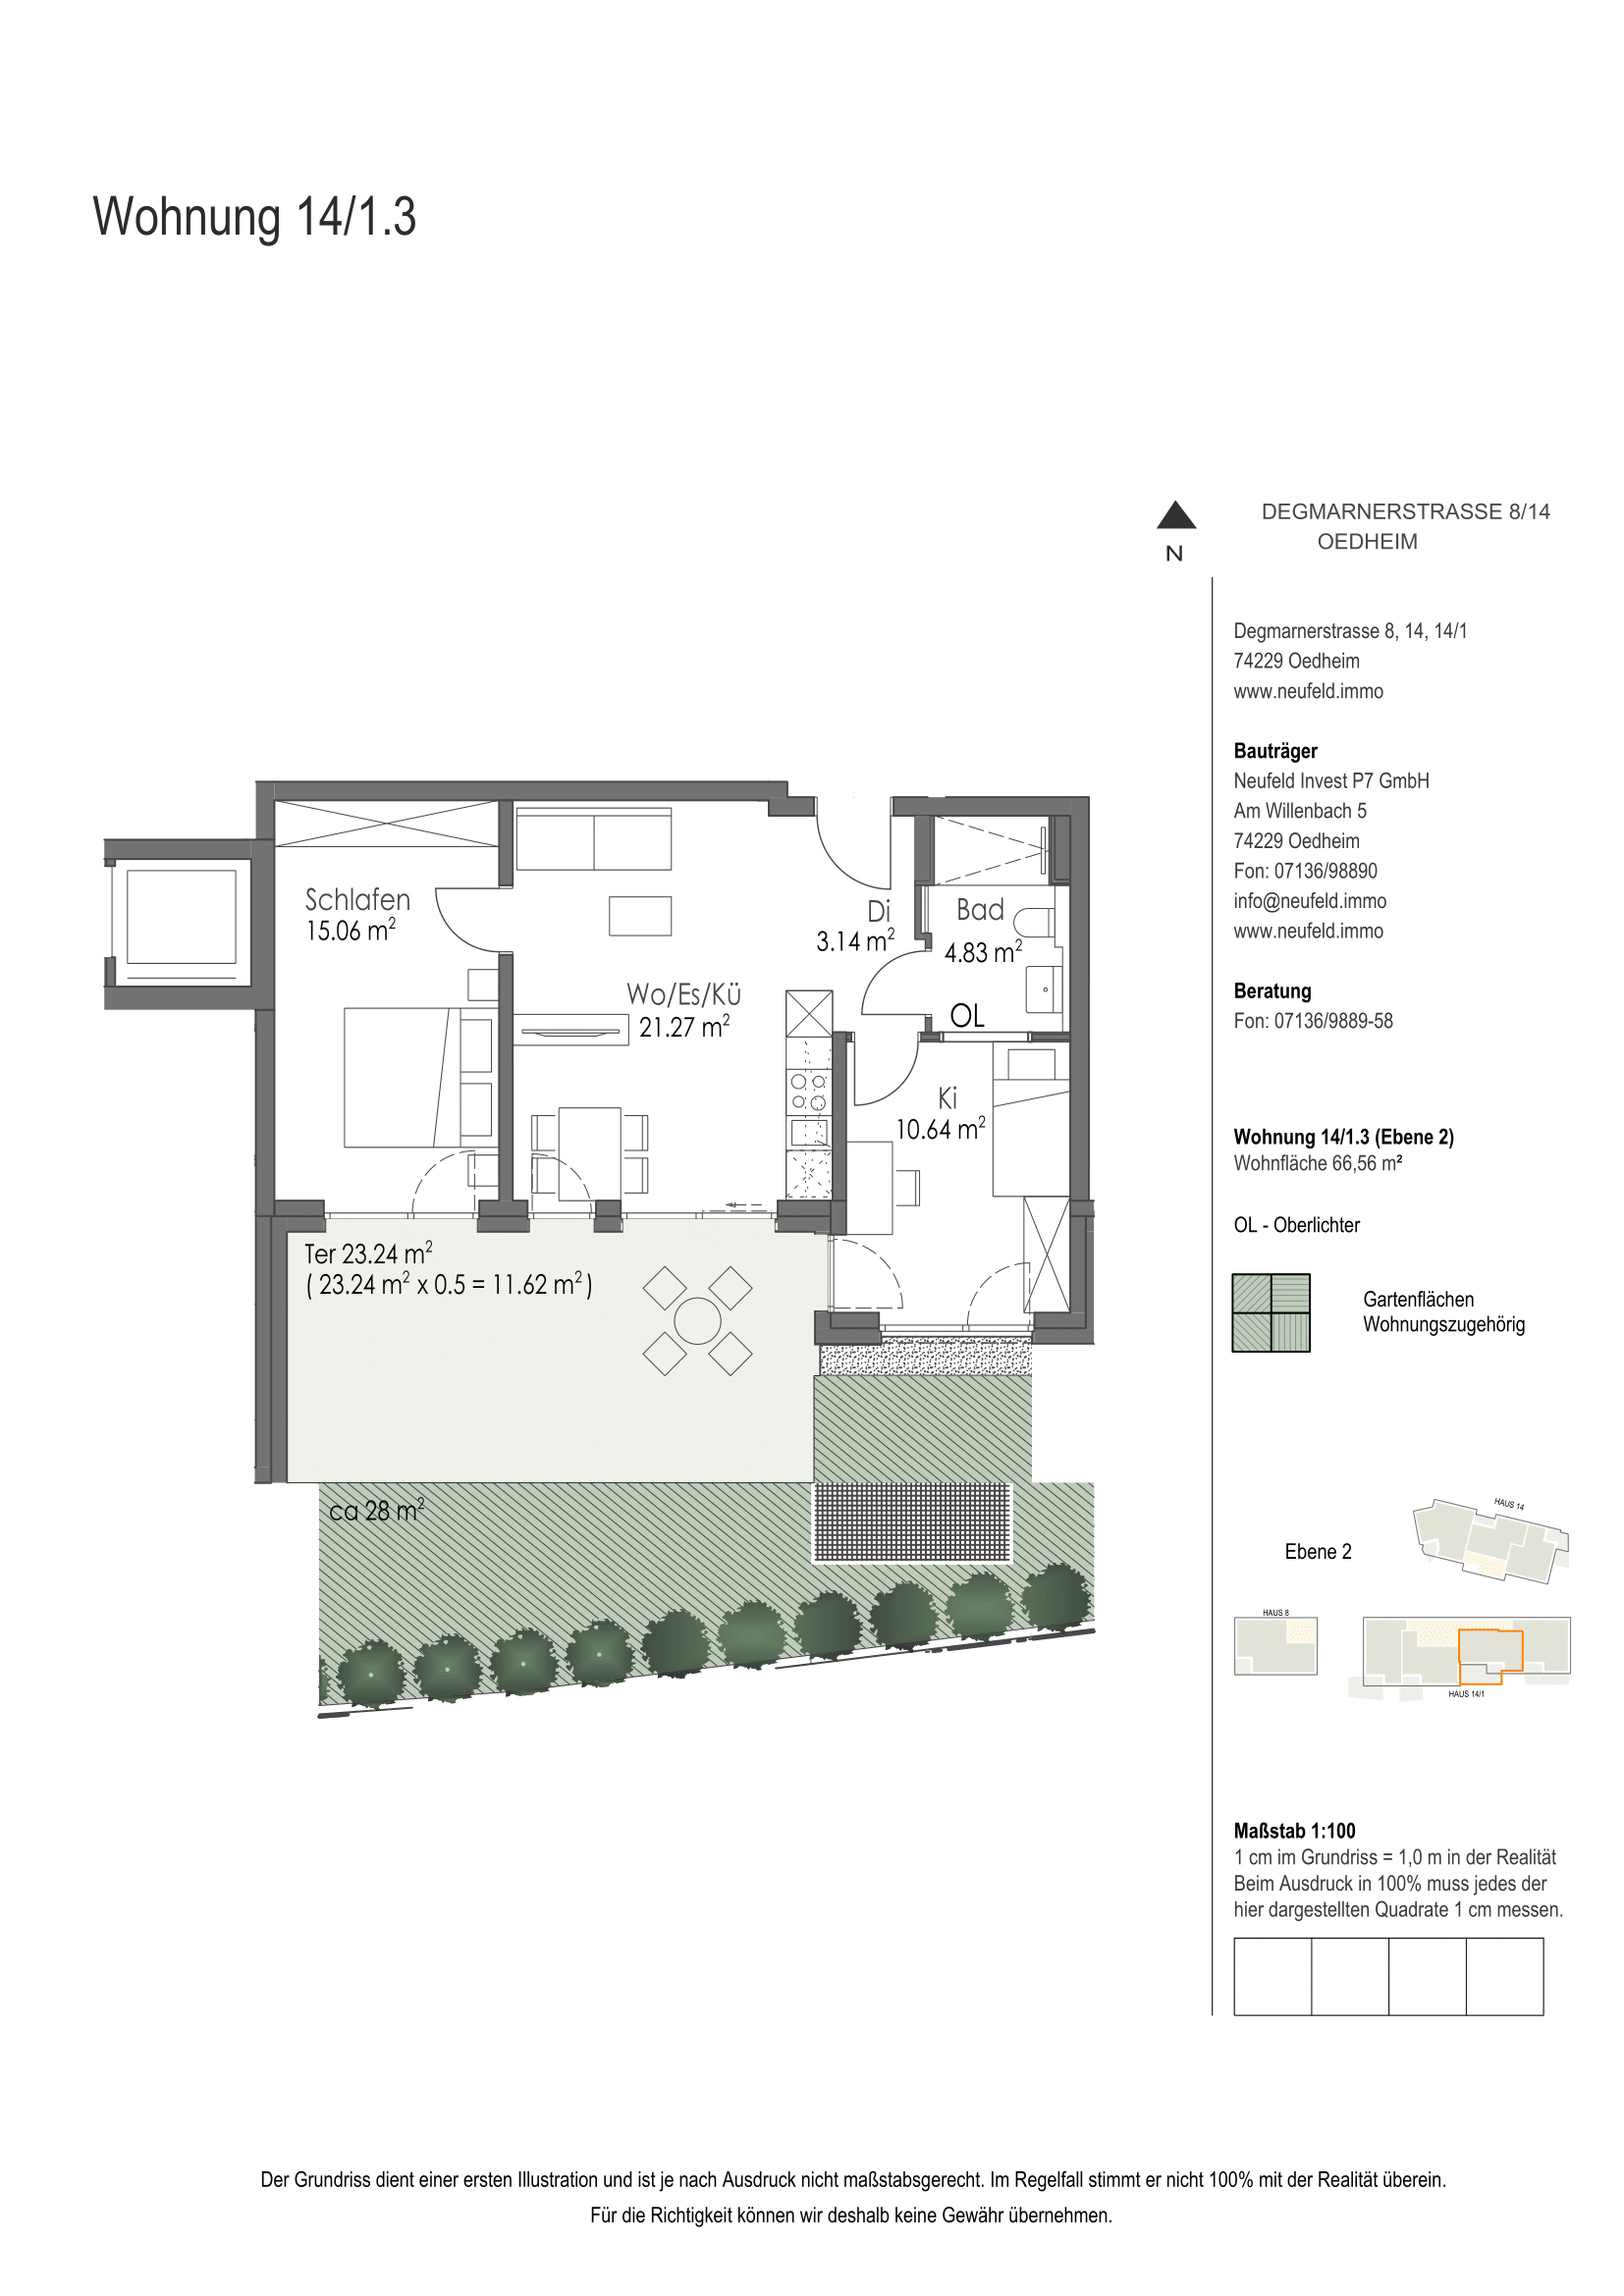 Wohnung Plan